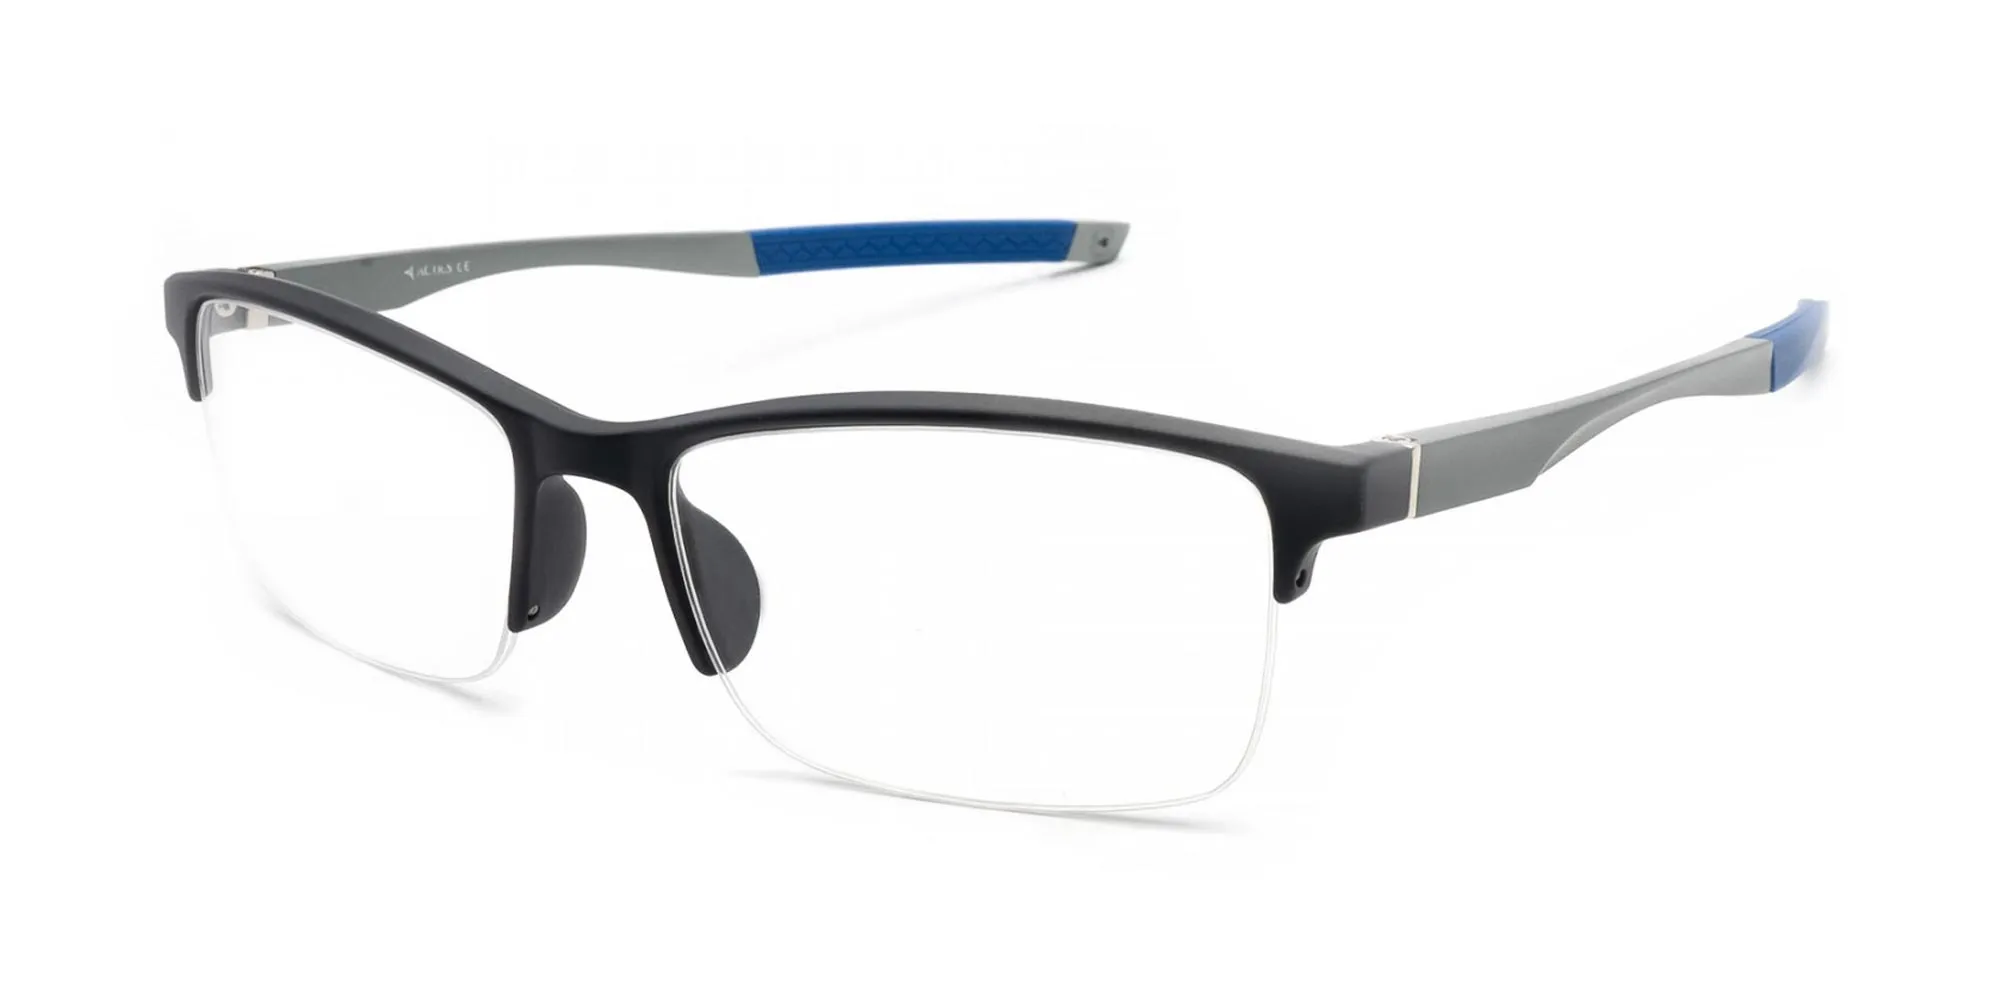 Black Sports Sunglasses 55007 – Glasses India Online